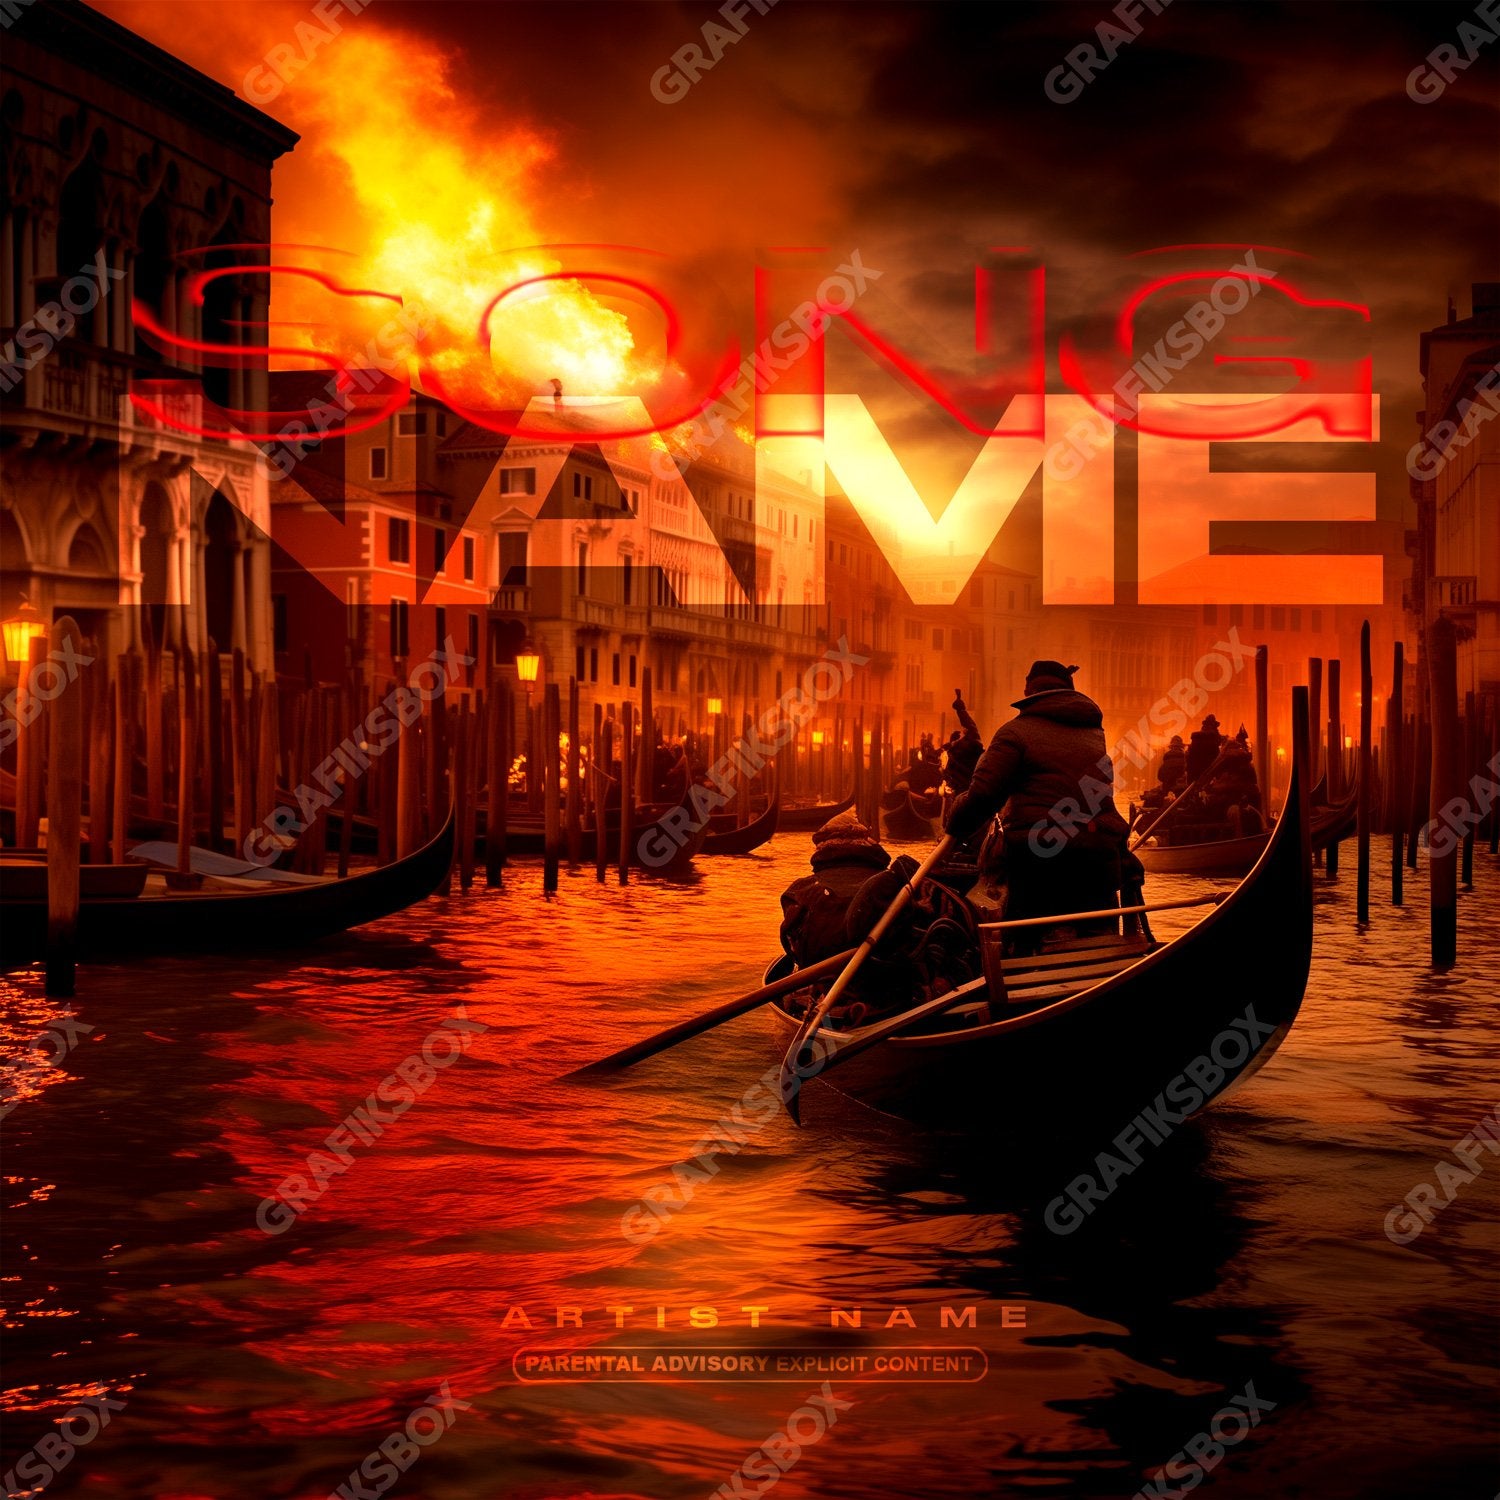 Venice premade cover art